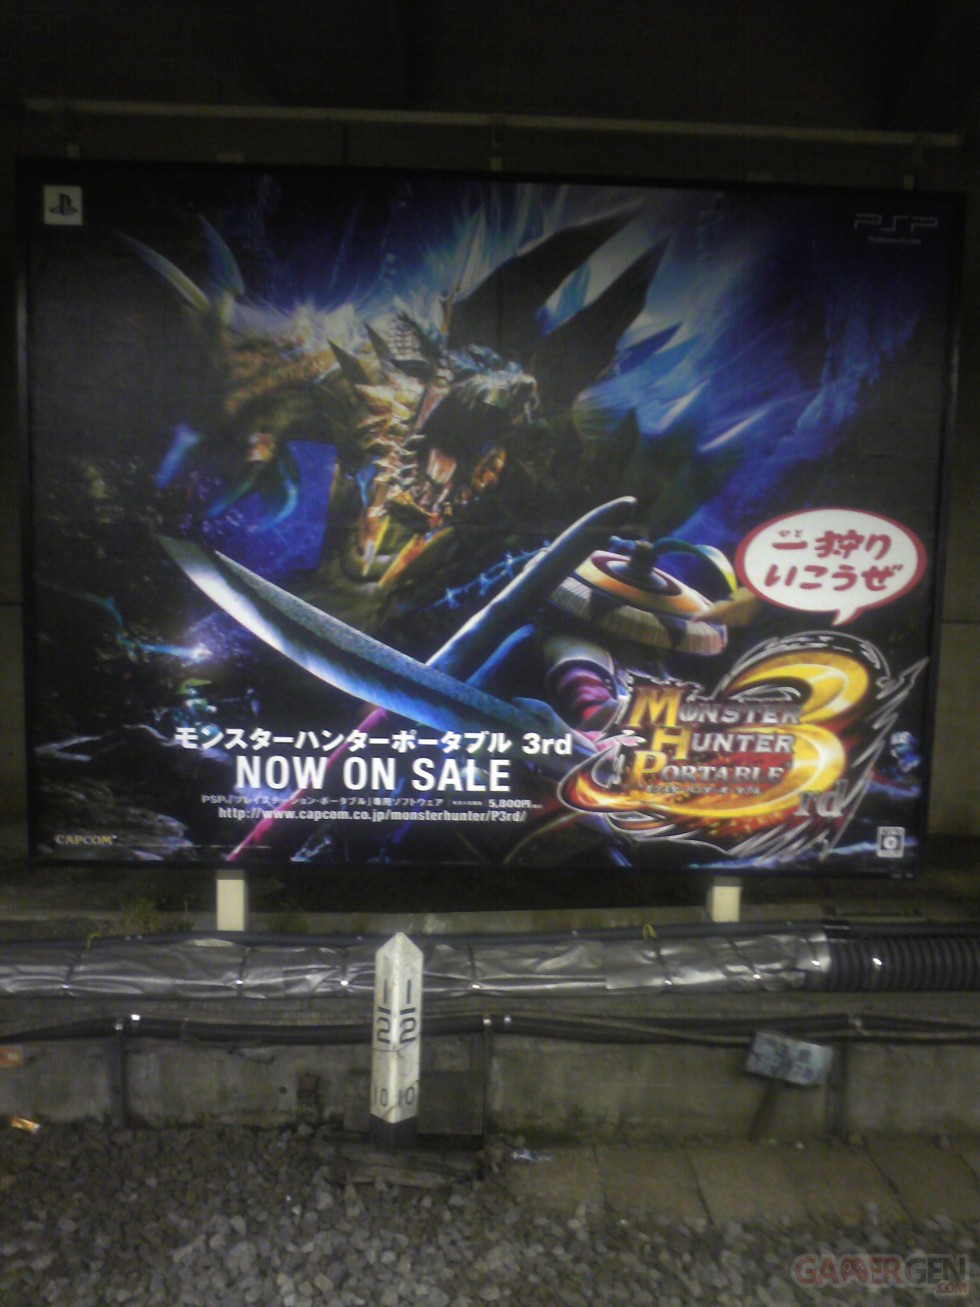 Monster Hunter Portable 3rd Japon PSP Japon Tokyo (6)